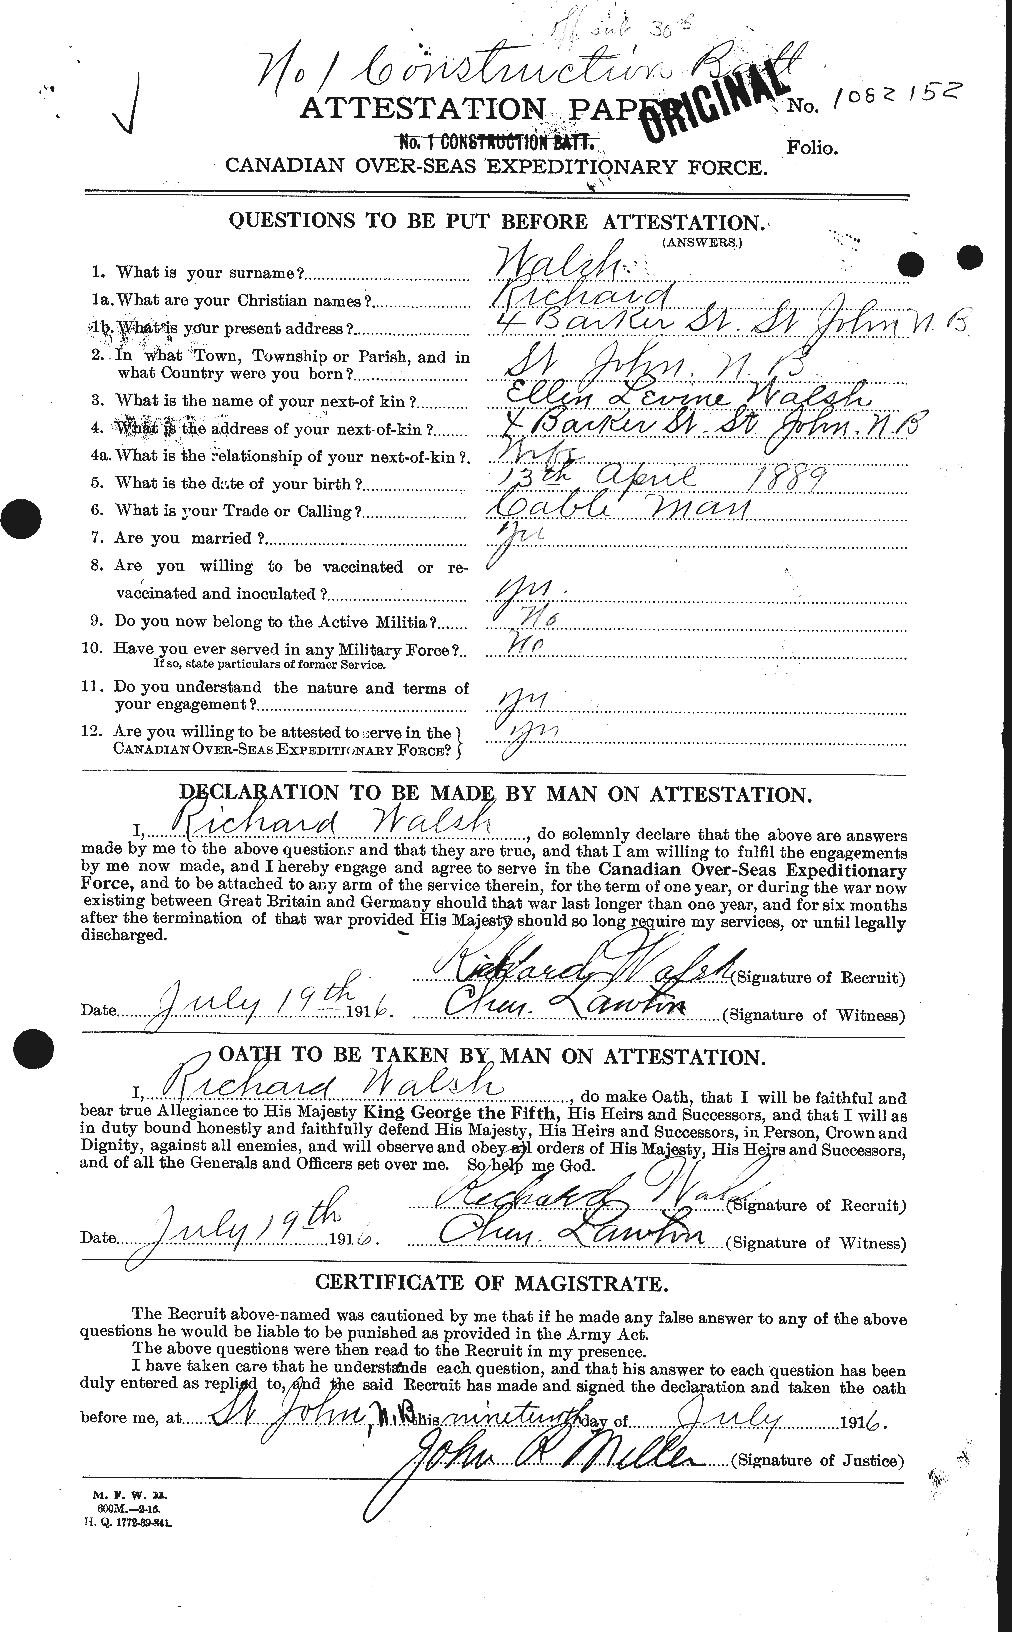 Dossiers du Personnel de la Première Guerre mondiale - CEC 653487a